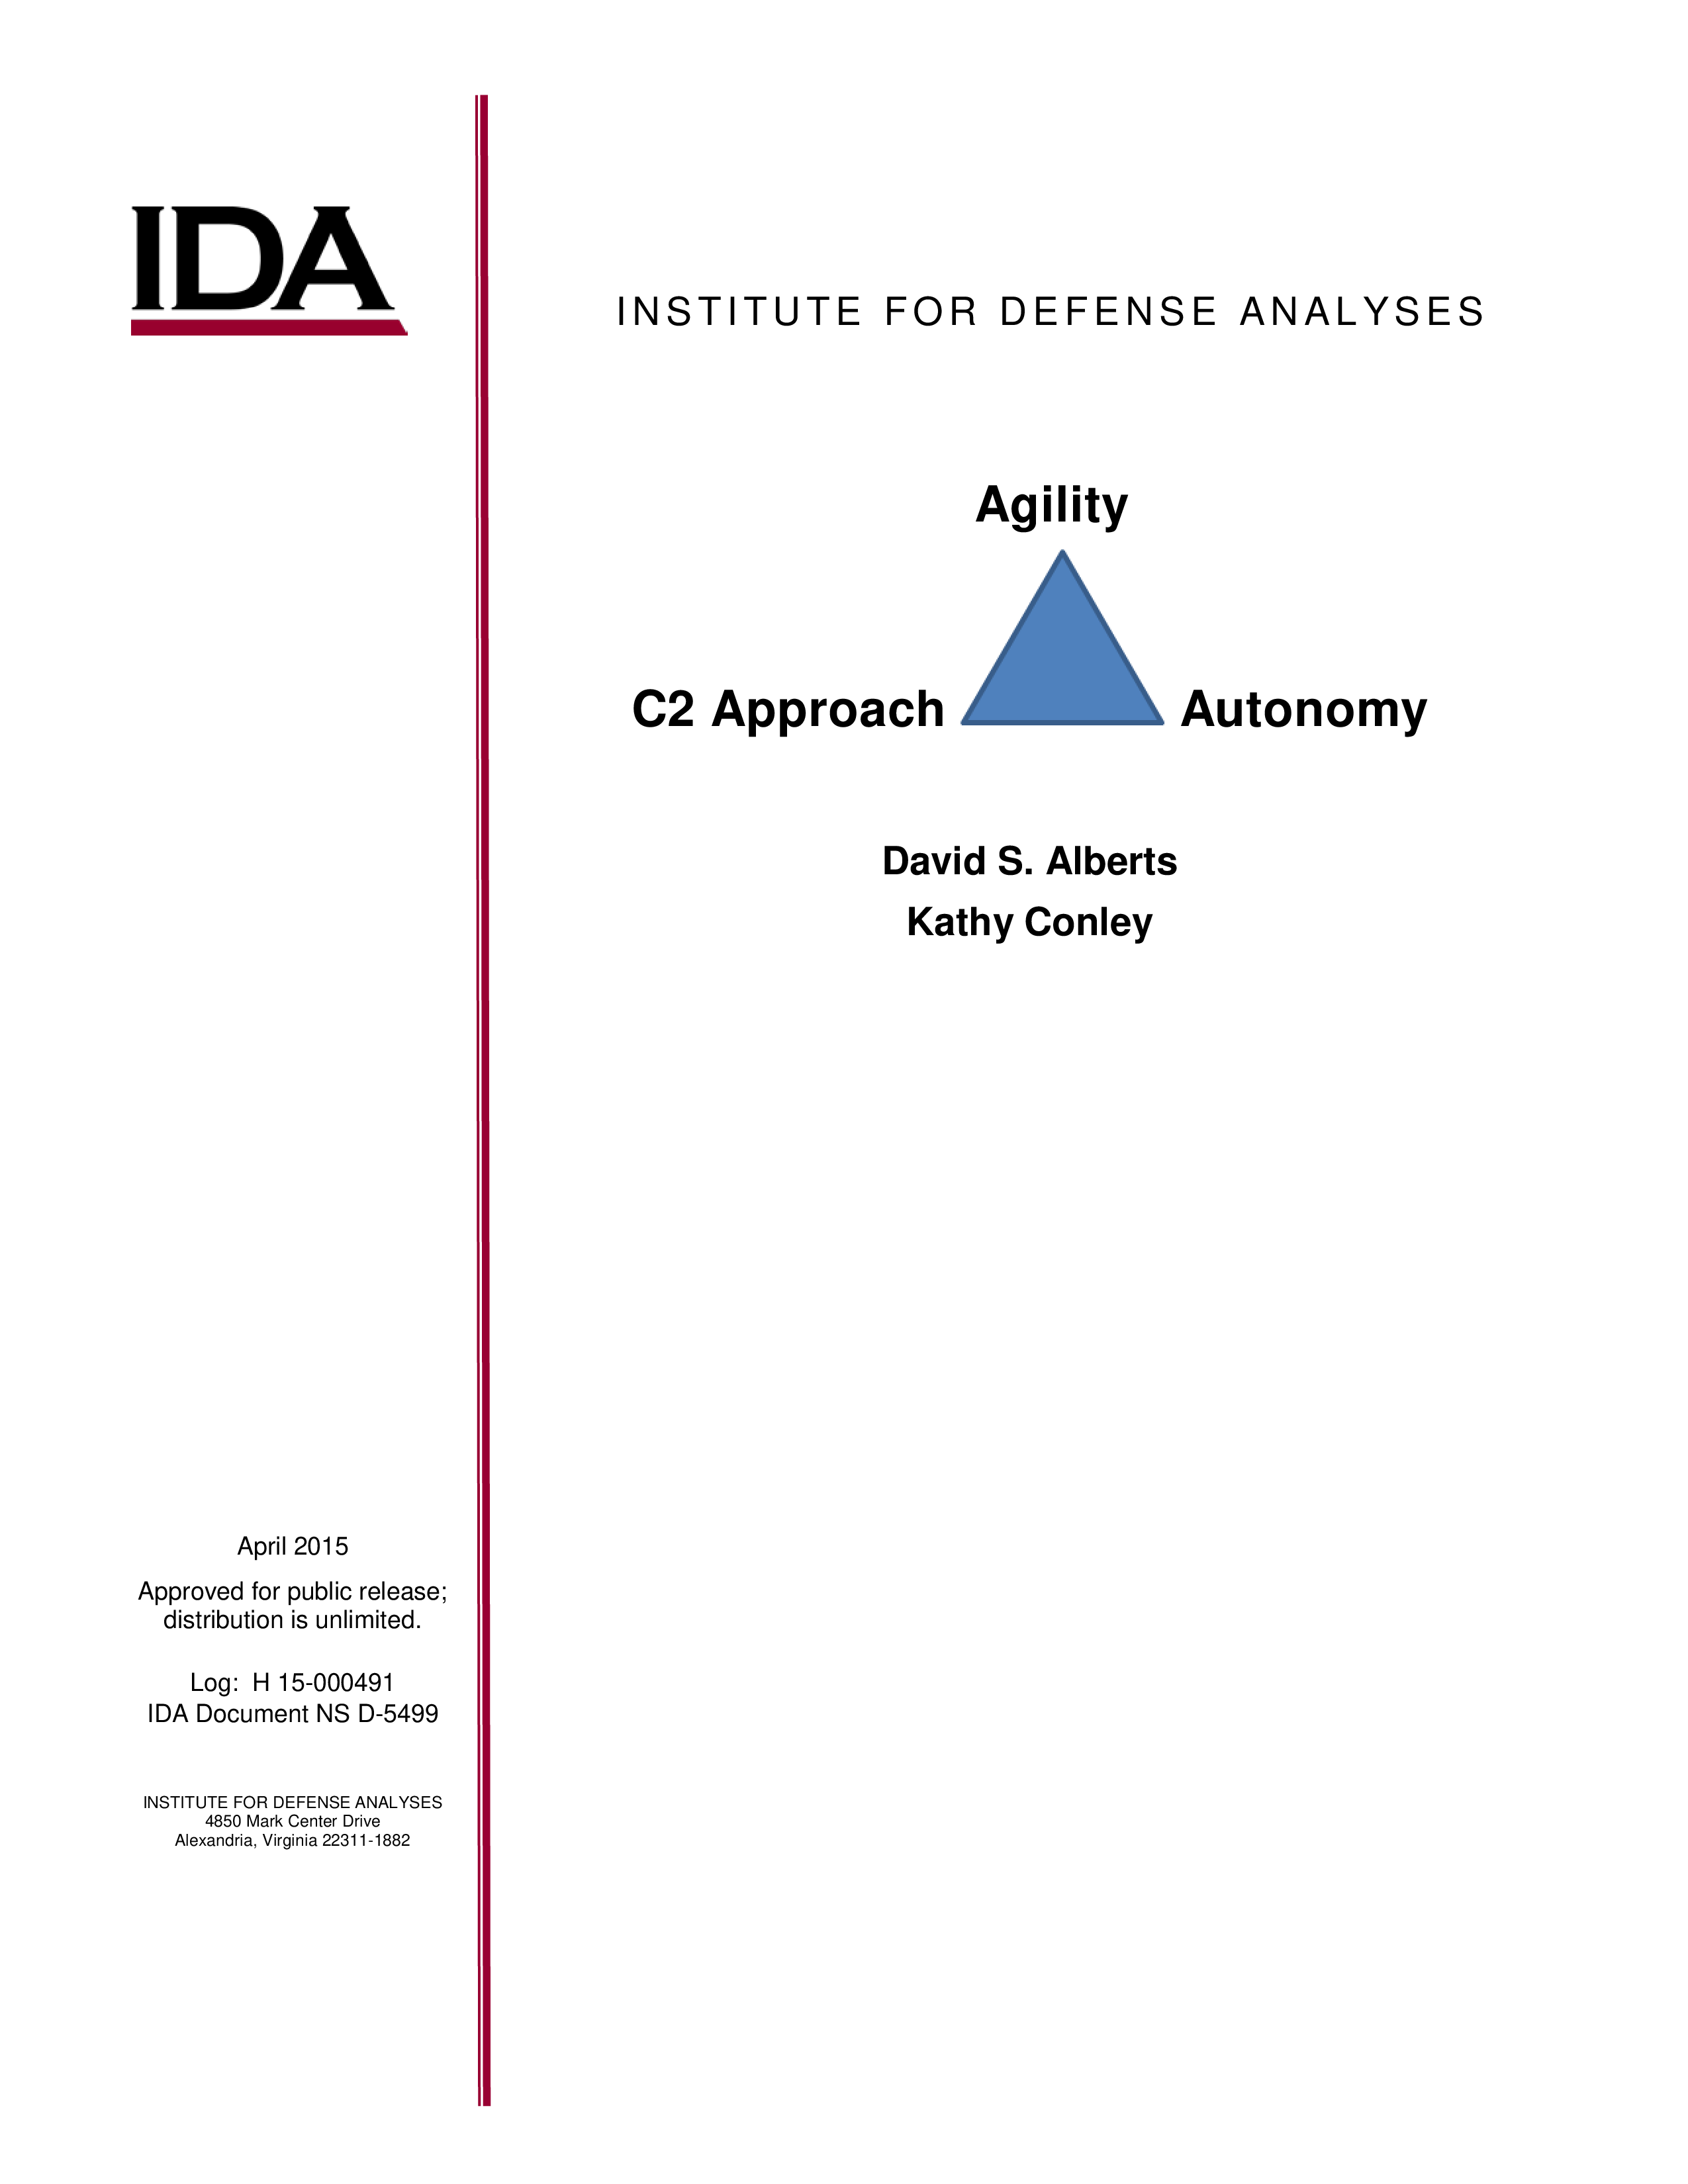 C2 Approach Agility Autonomy